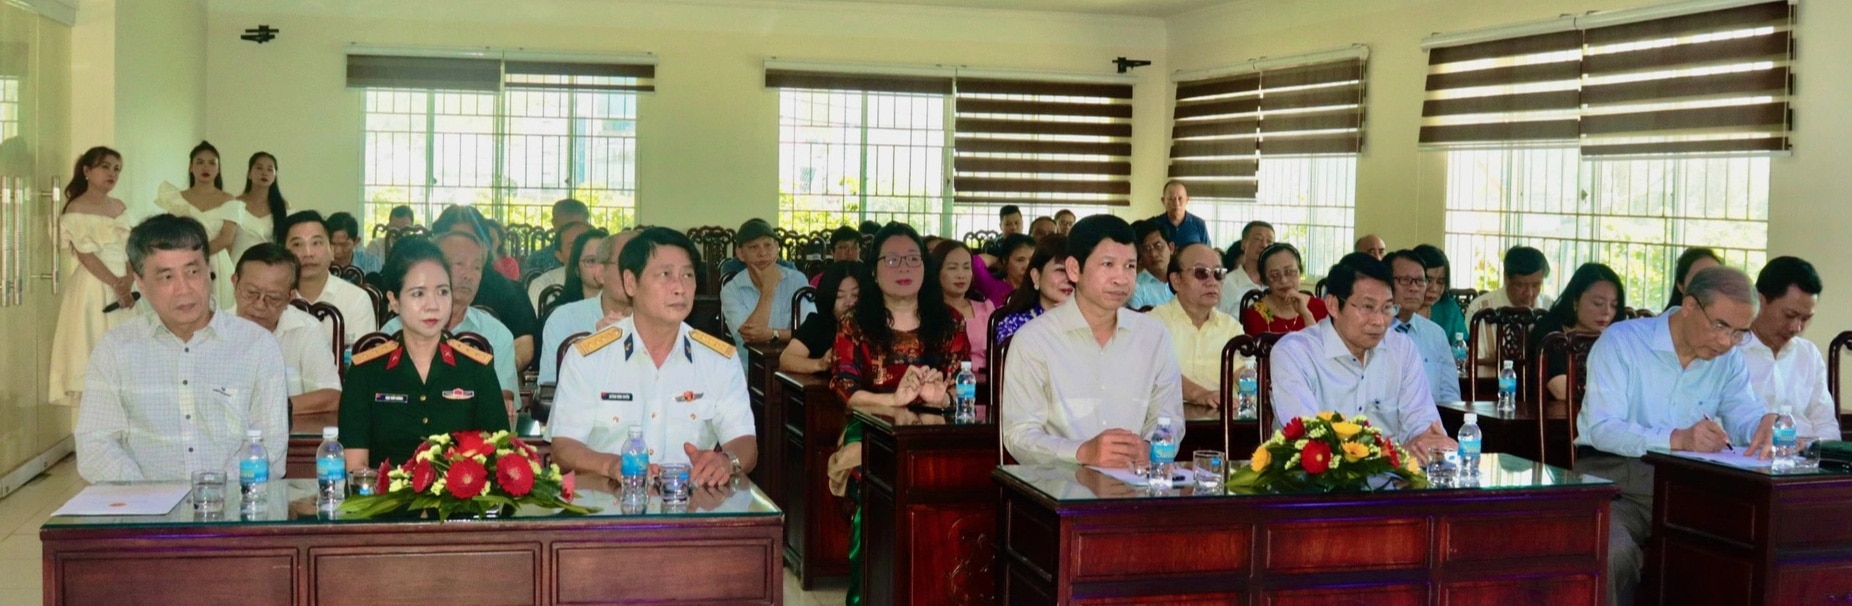 Trại sáng tác cho các tác giả nghiên cứu lý luận, phê bình văn học được khai mạc tại Nha Trang - Ảnh: MINH CHIẾN